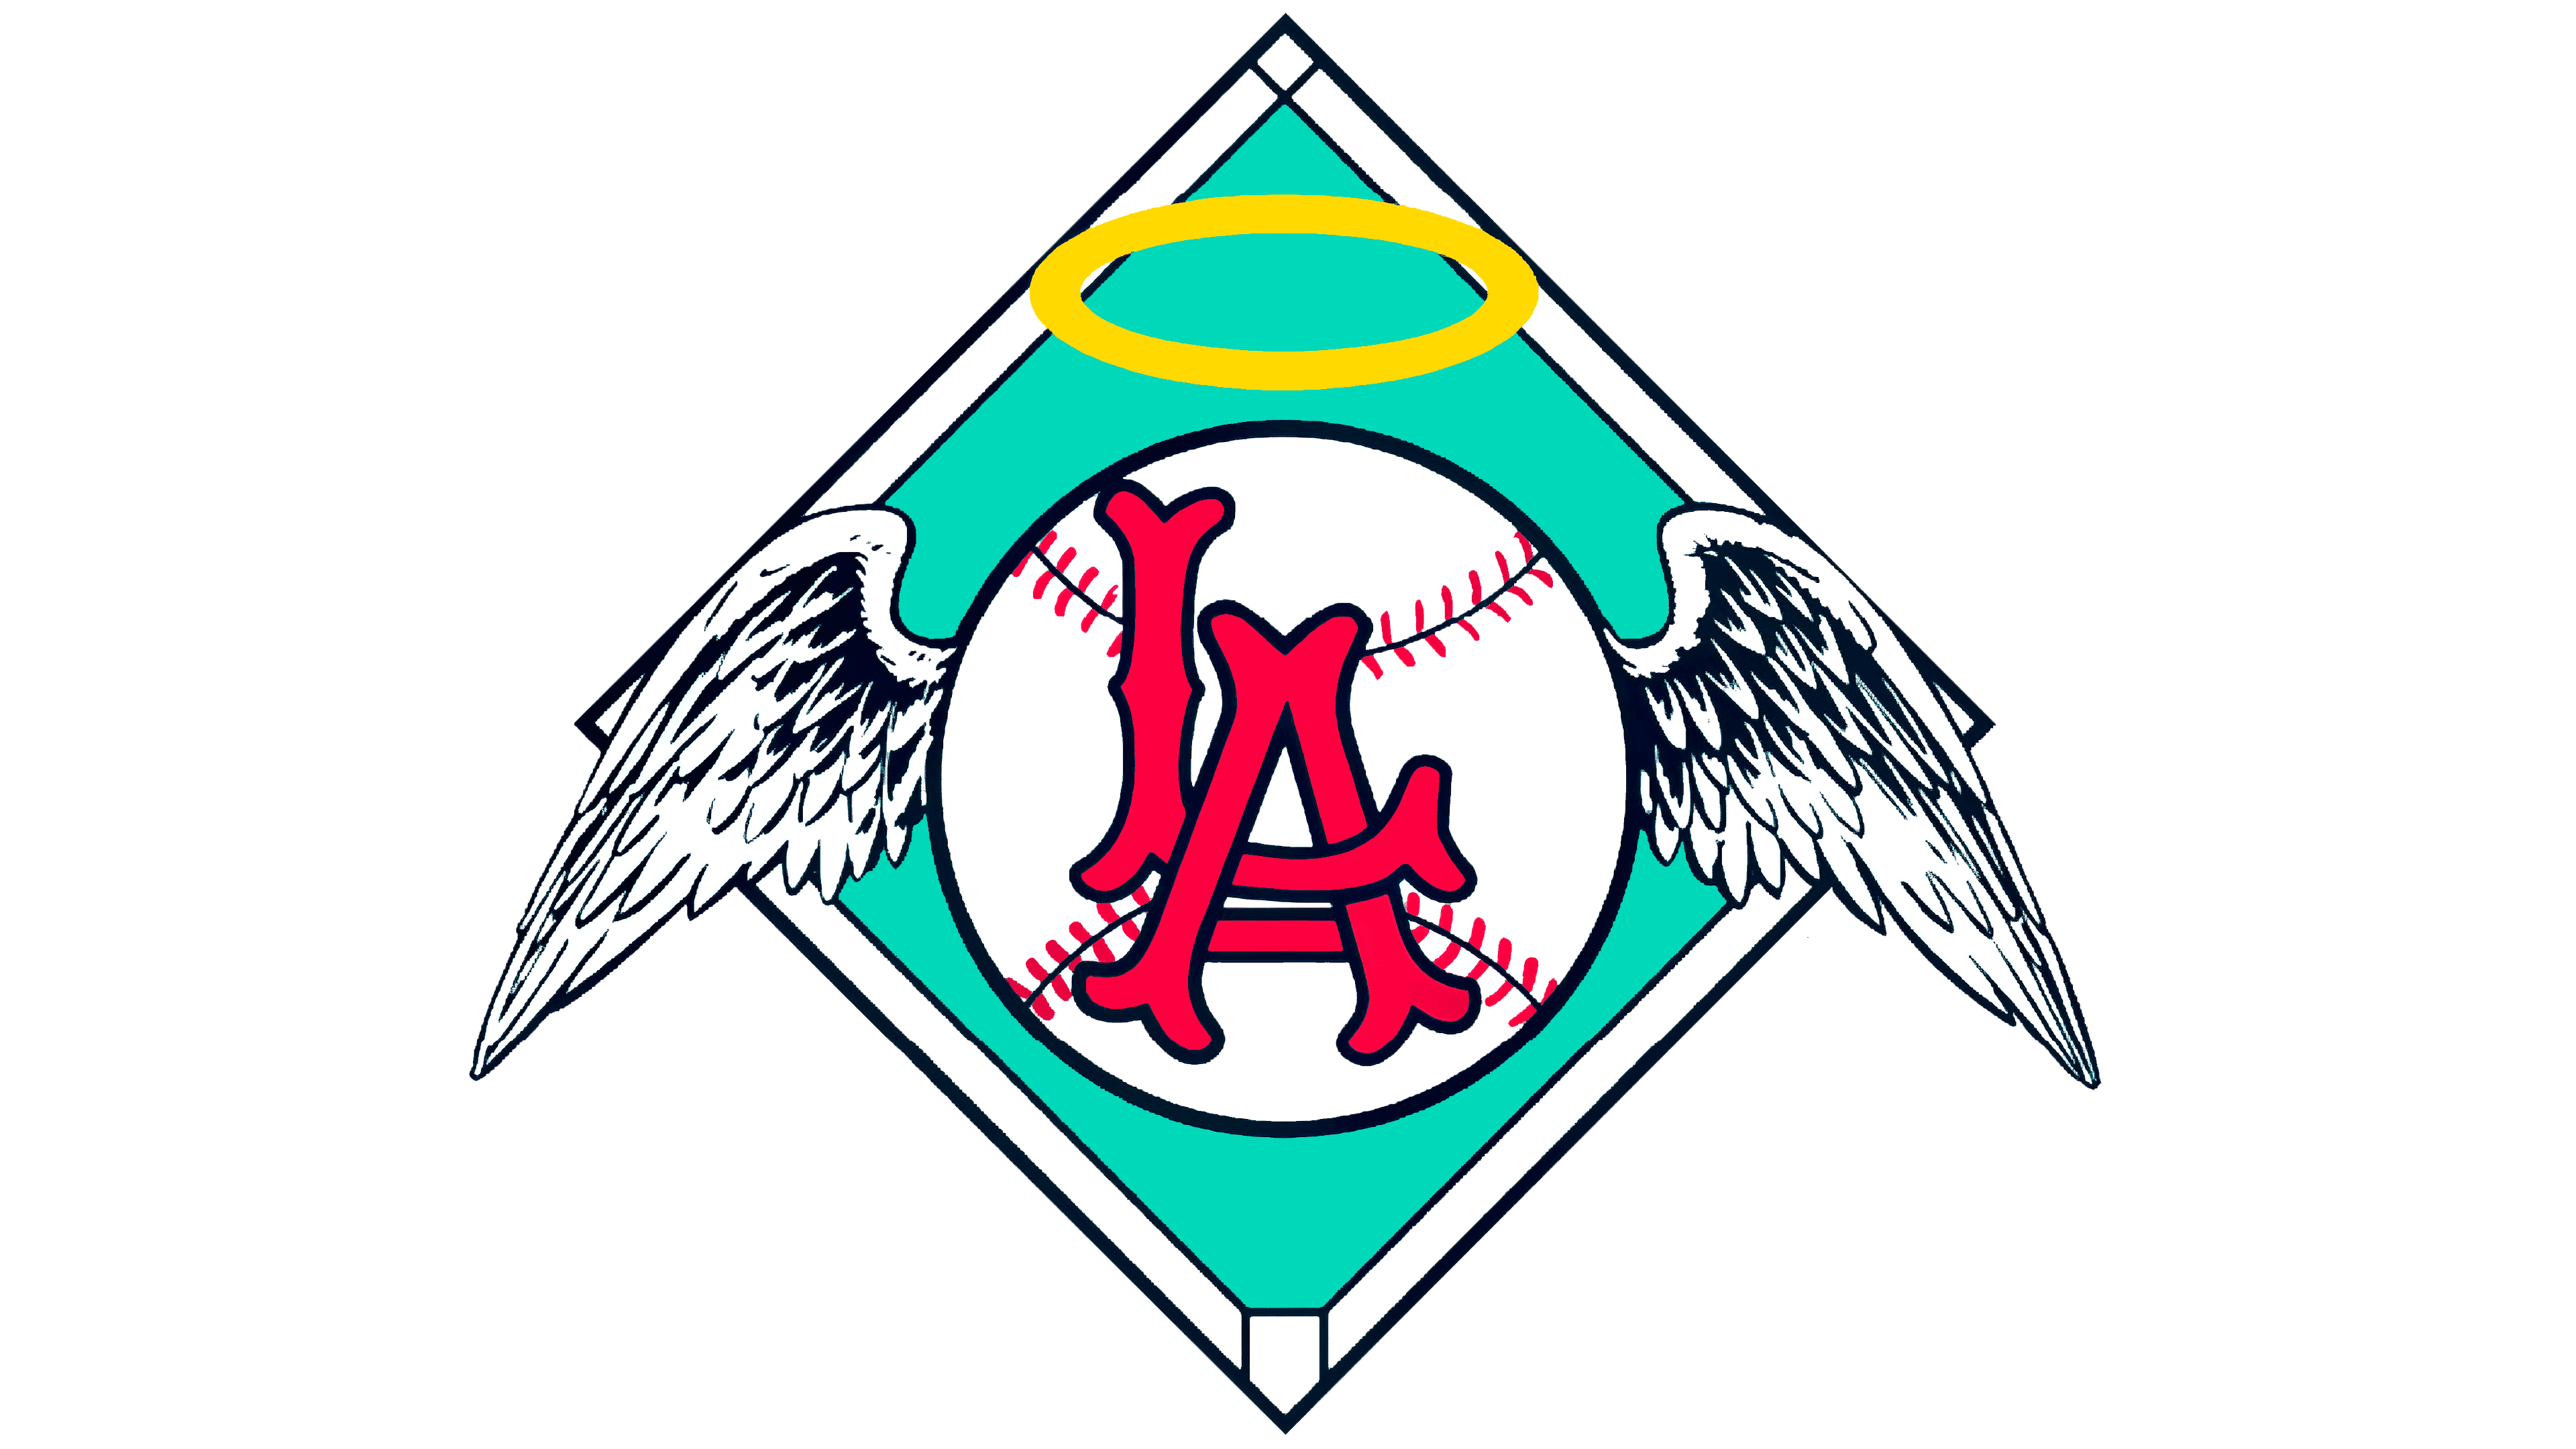 Los Angeles Angels Black Framed Logo Jersey Display Case